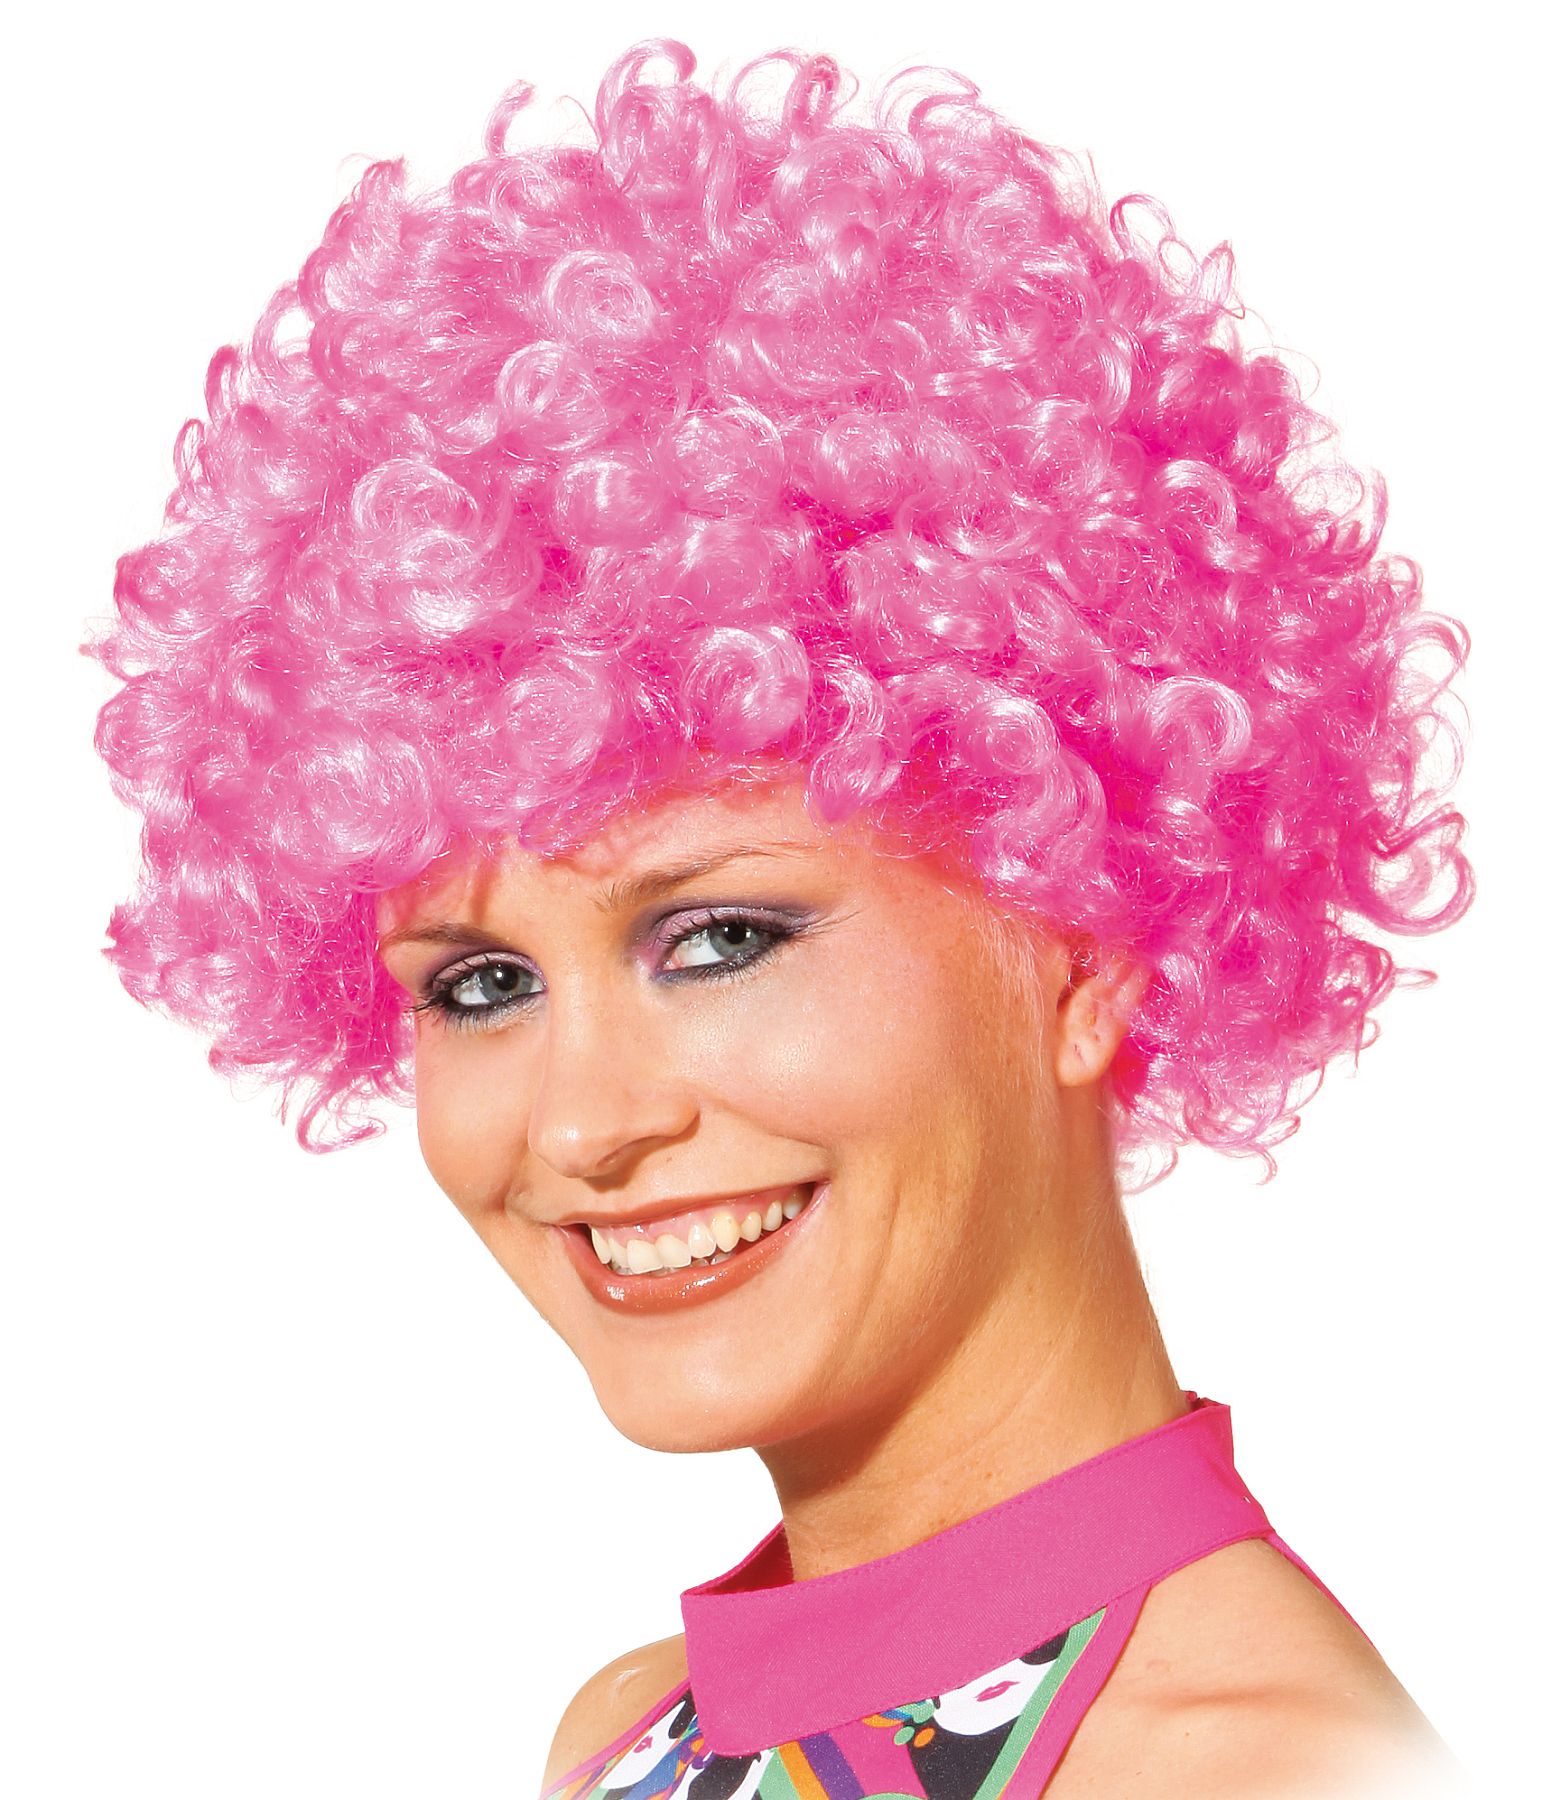 Hair kleine Locke, pink